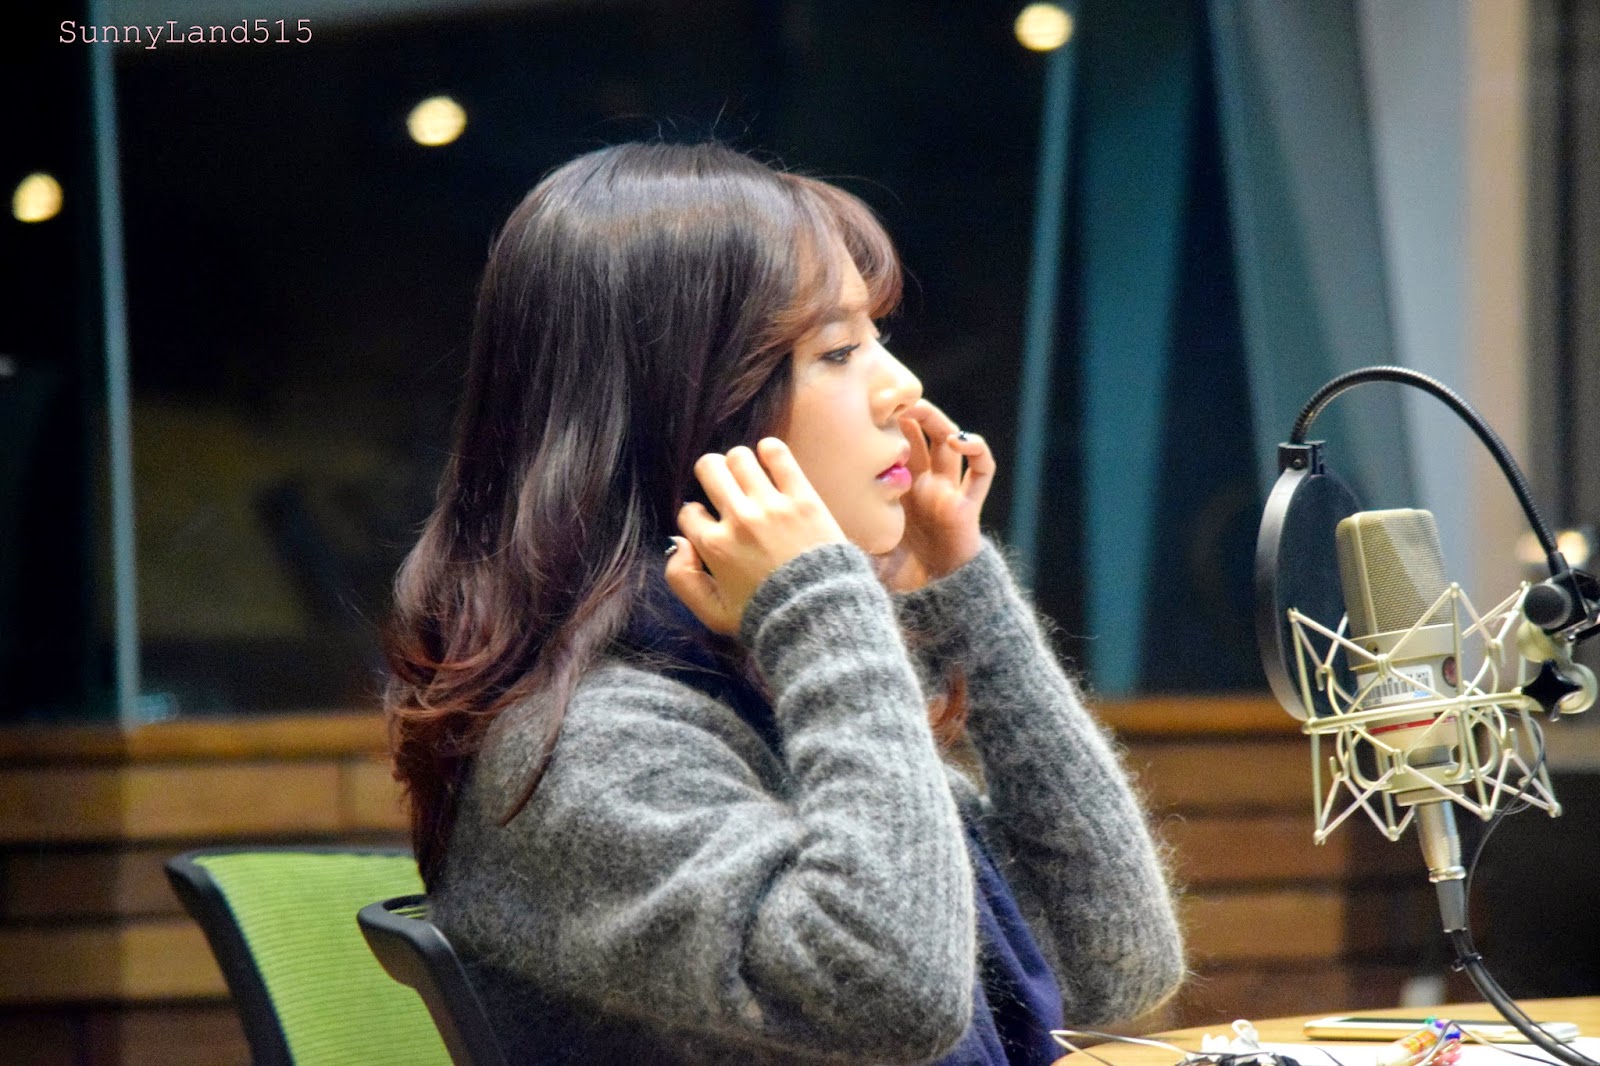 [OTHER][06-02-2015]Hình ảnh mới nhất từ DJ Sunny tại Radio MBC FM4U - "FM Date" - Page 10 DSC_0204_Fotor